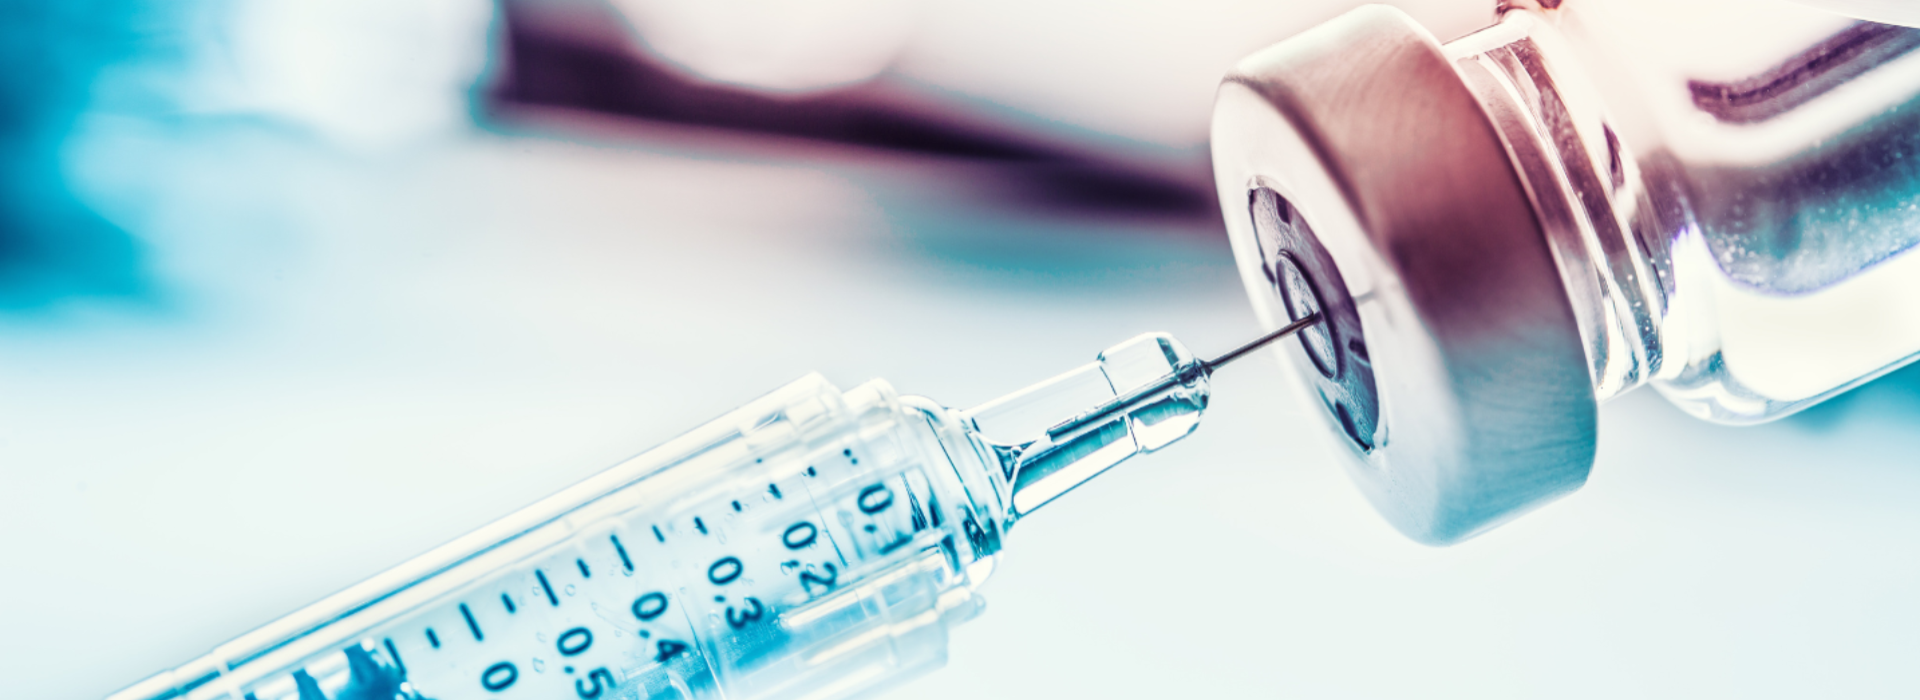 Dlaczego warto zaszczepić dziecko przeciw HPV? Rozmowa z prof. Cezarym Szczylikiem